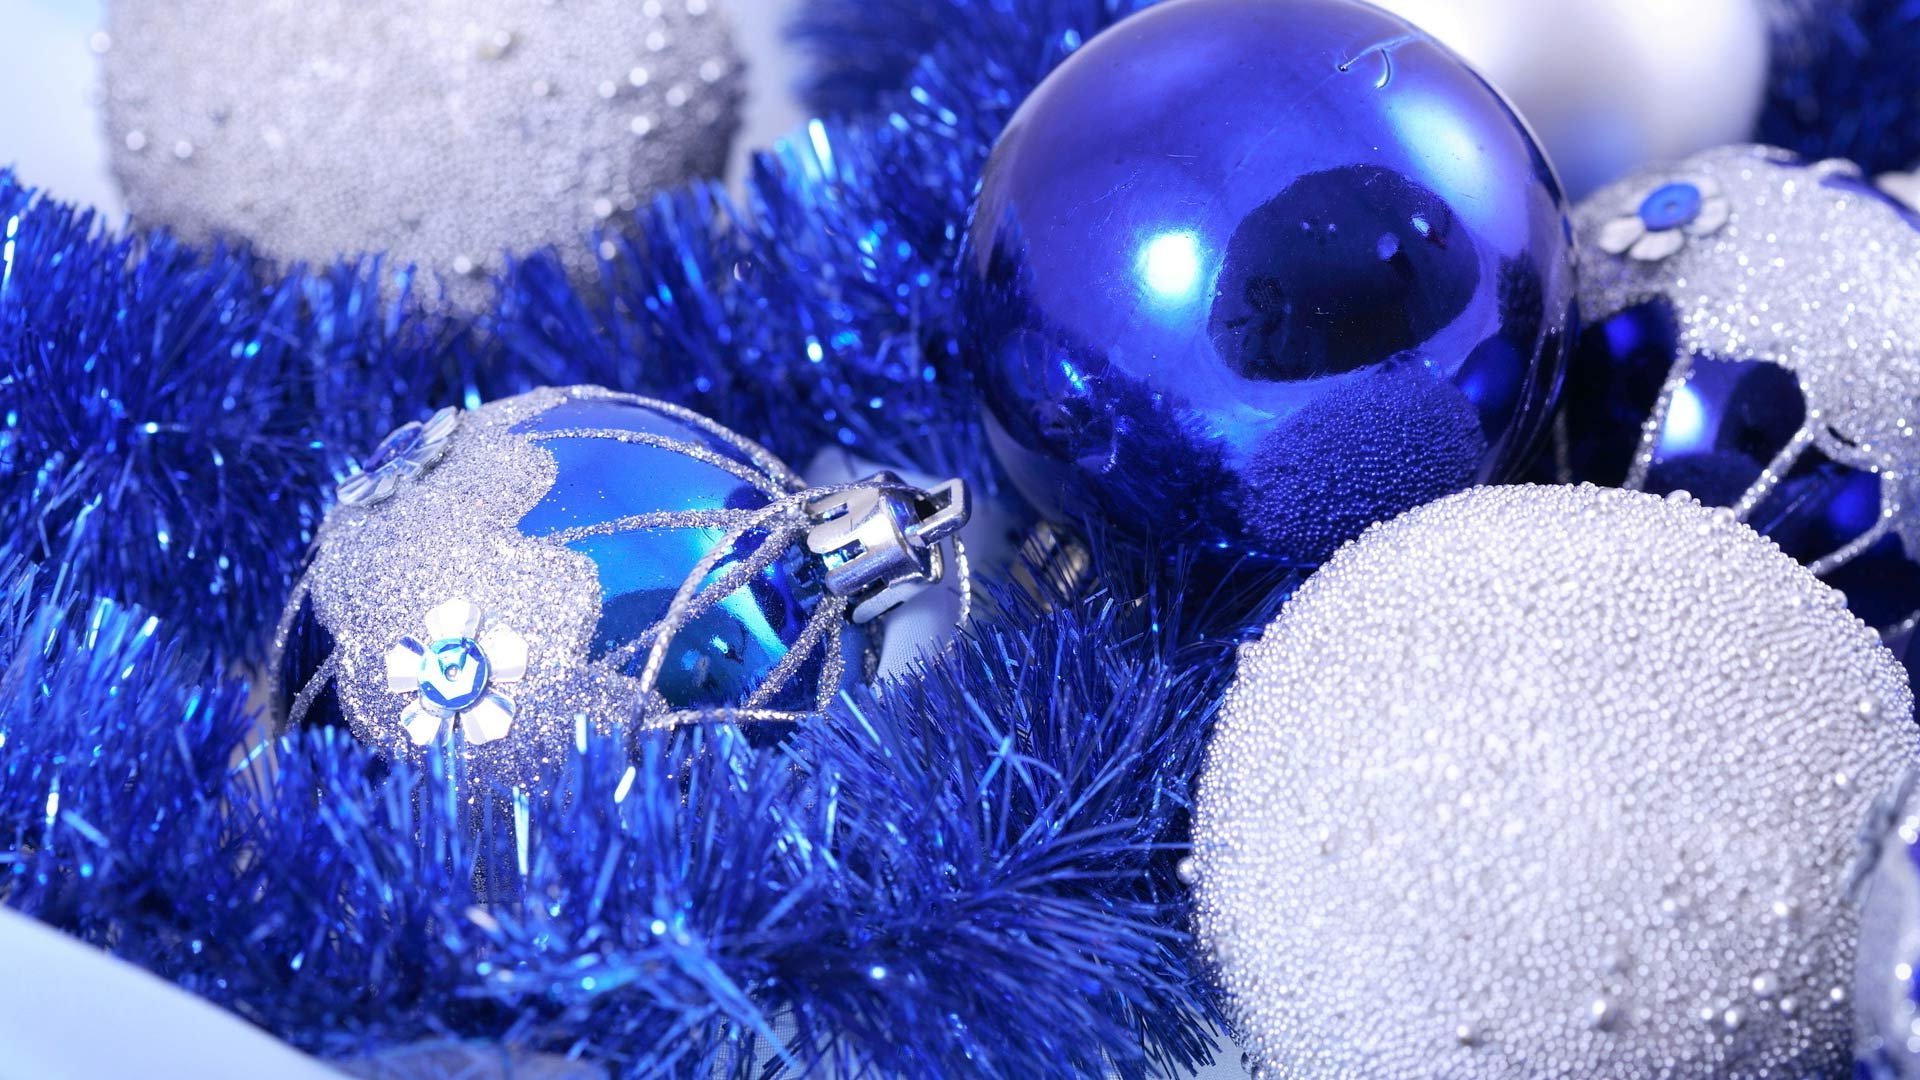 Обои на рабочий экран новый год. Новогодние шары. Красивые новогодние. Синий новогодний шарик. Новогодняя елка с синими игрушками.